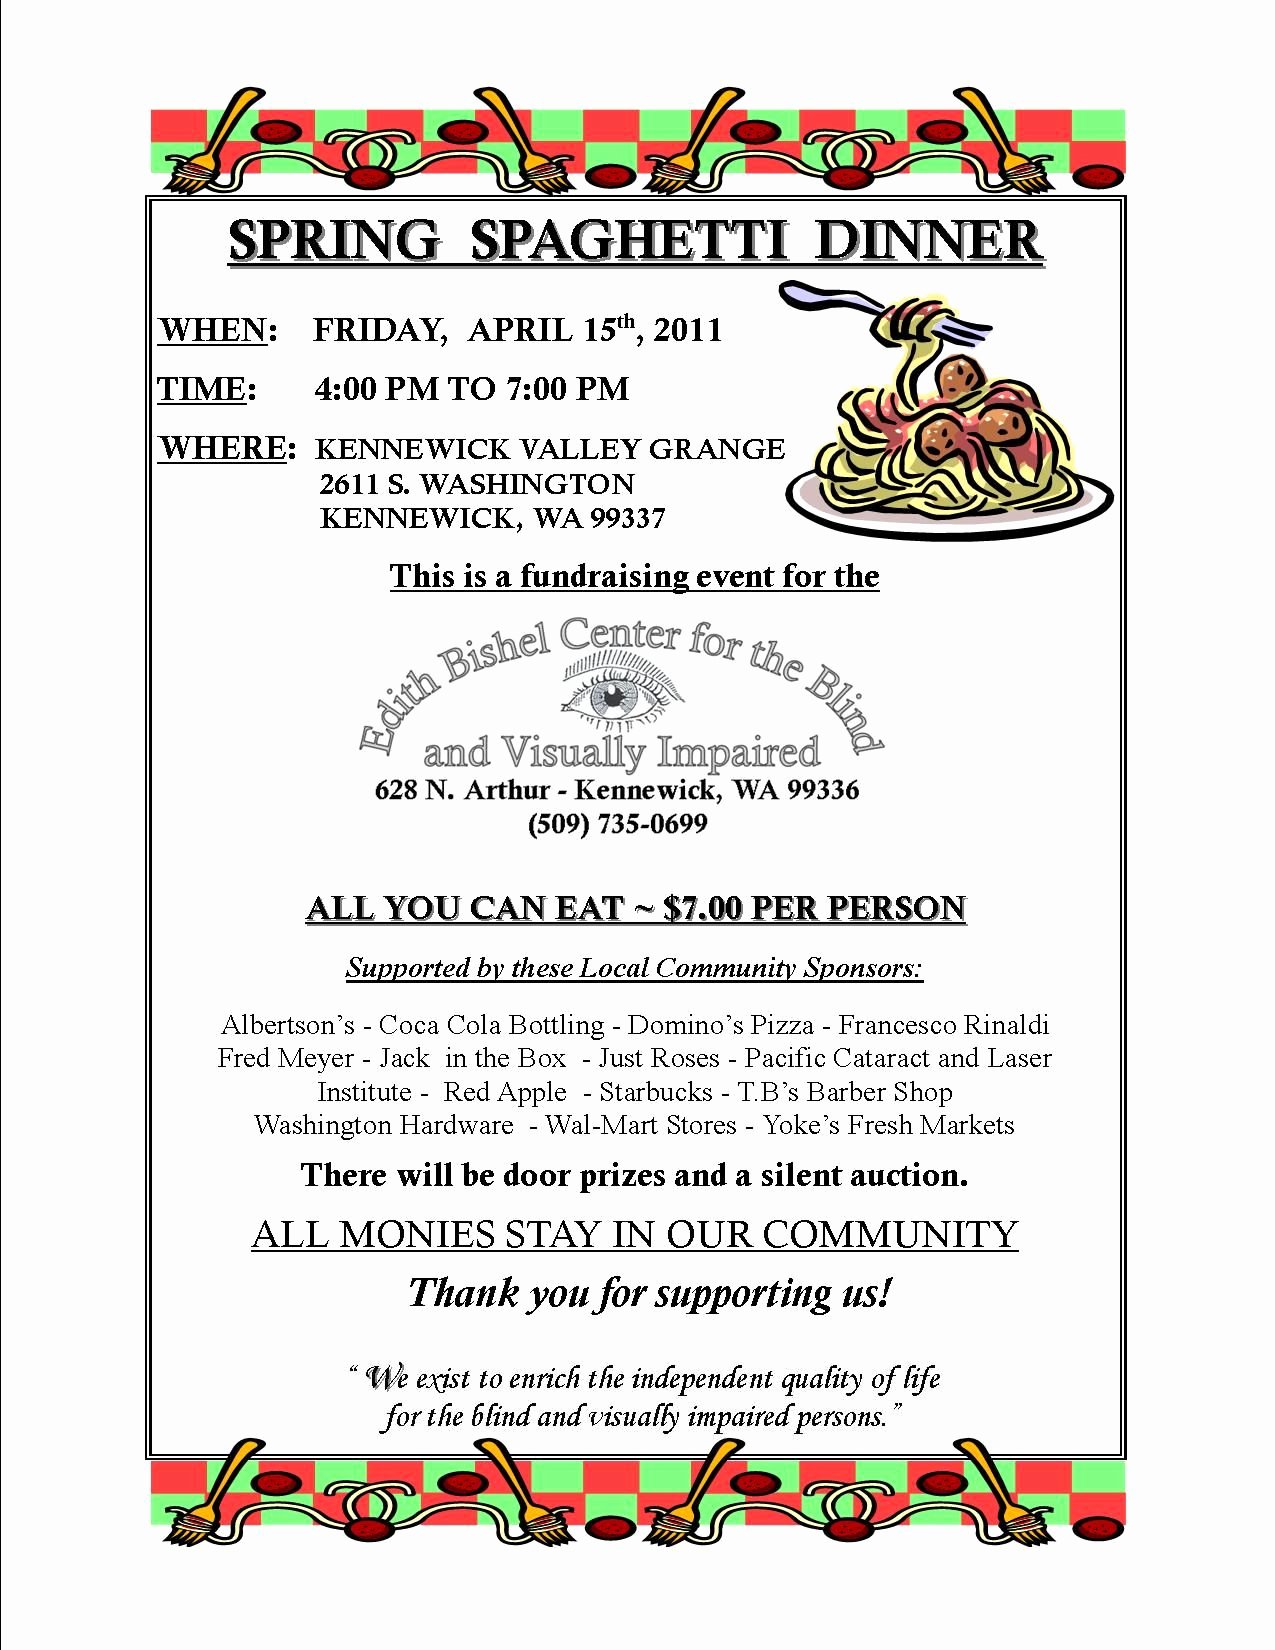 Spaghetti Dinner Fundraiser Flyer Template Fresh Dinner Fundraiser April 15 2011 Spring Spaghetti Dinner Fundraiser